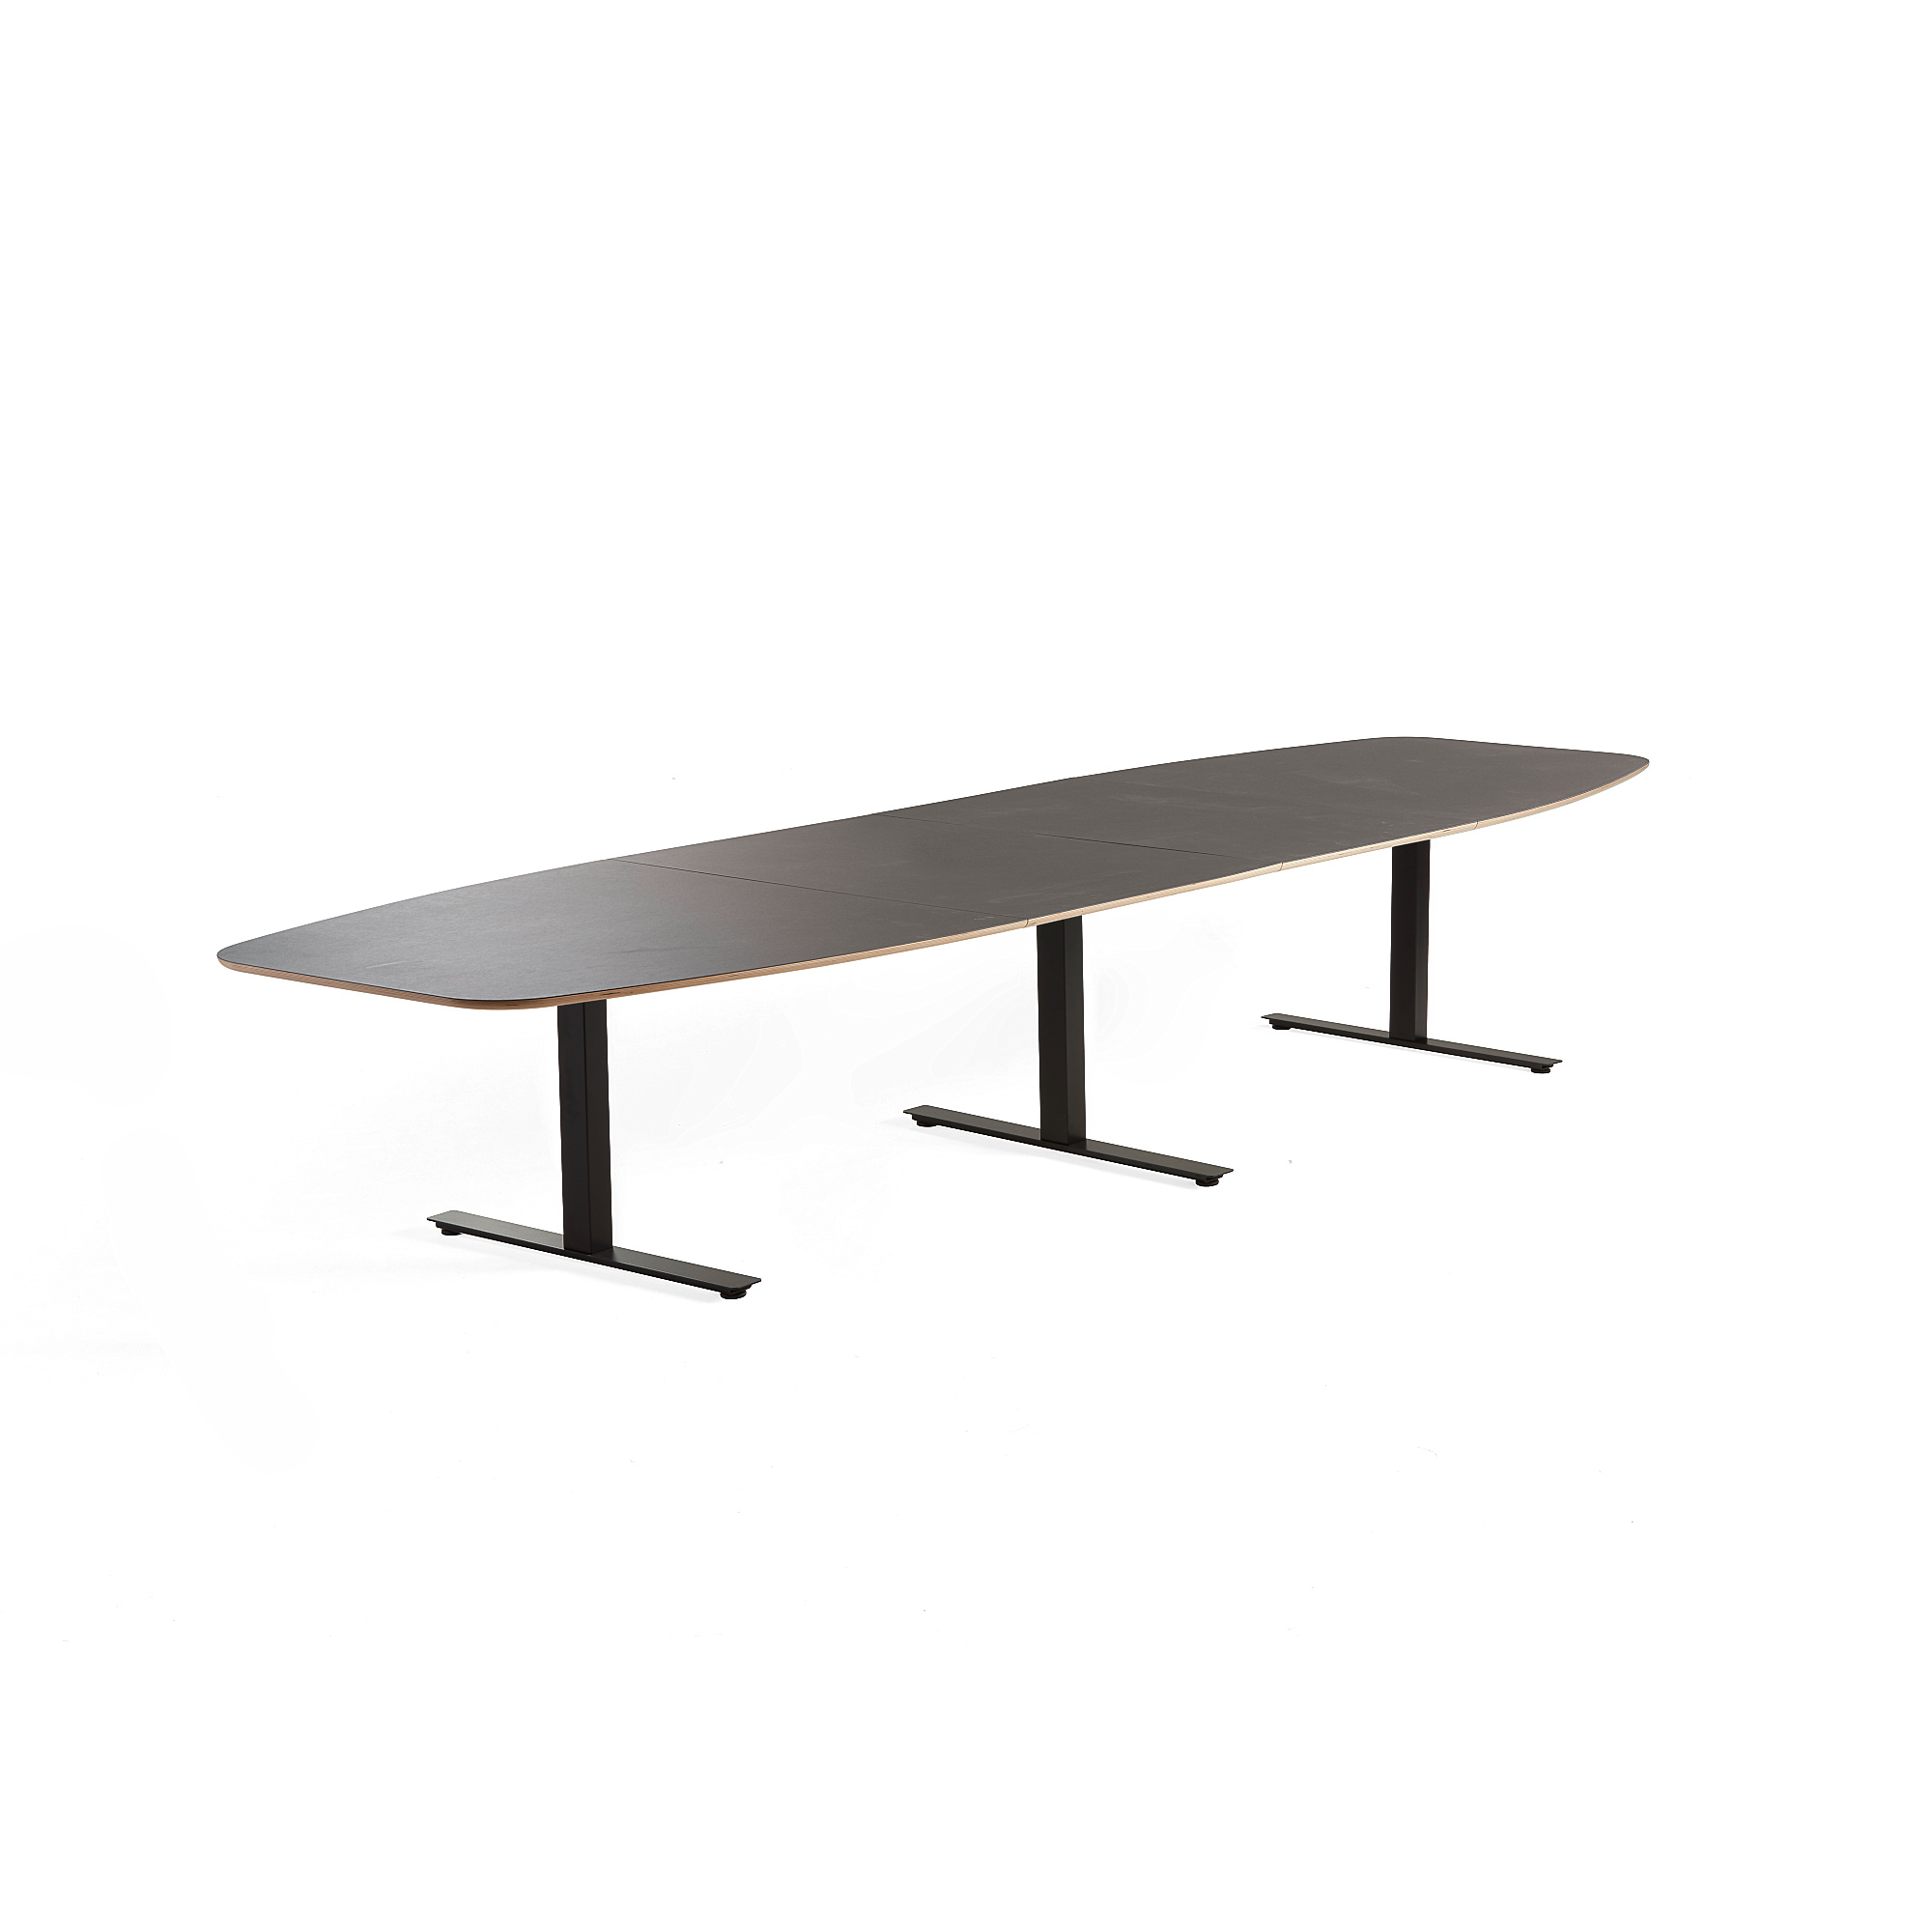 Rokovací stôl AUDREY, 4000x1200 mm, čierny rám, šedohnedá doska